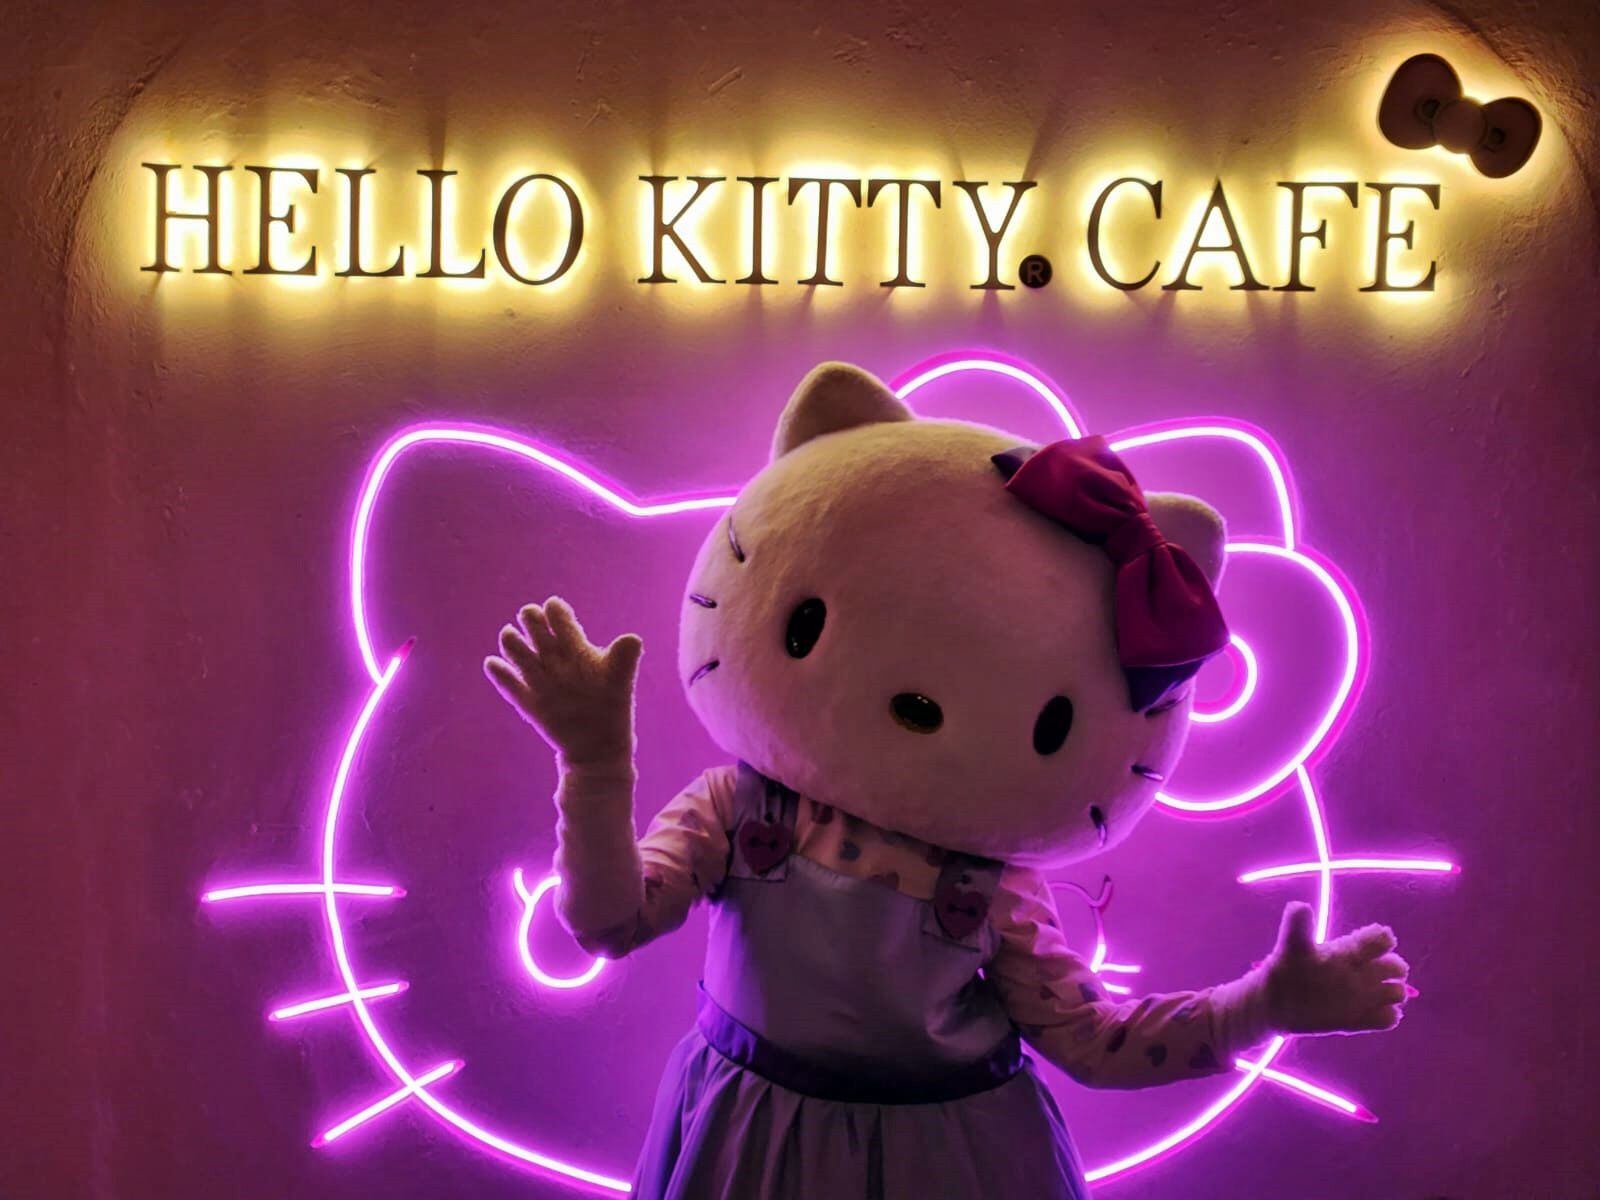 Esta segunda sucursal de Hello Kitty Café se encuentra en San Ángel, al sur de la CDMX. (Foto: Erick Paz / Cortesía).